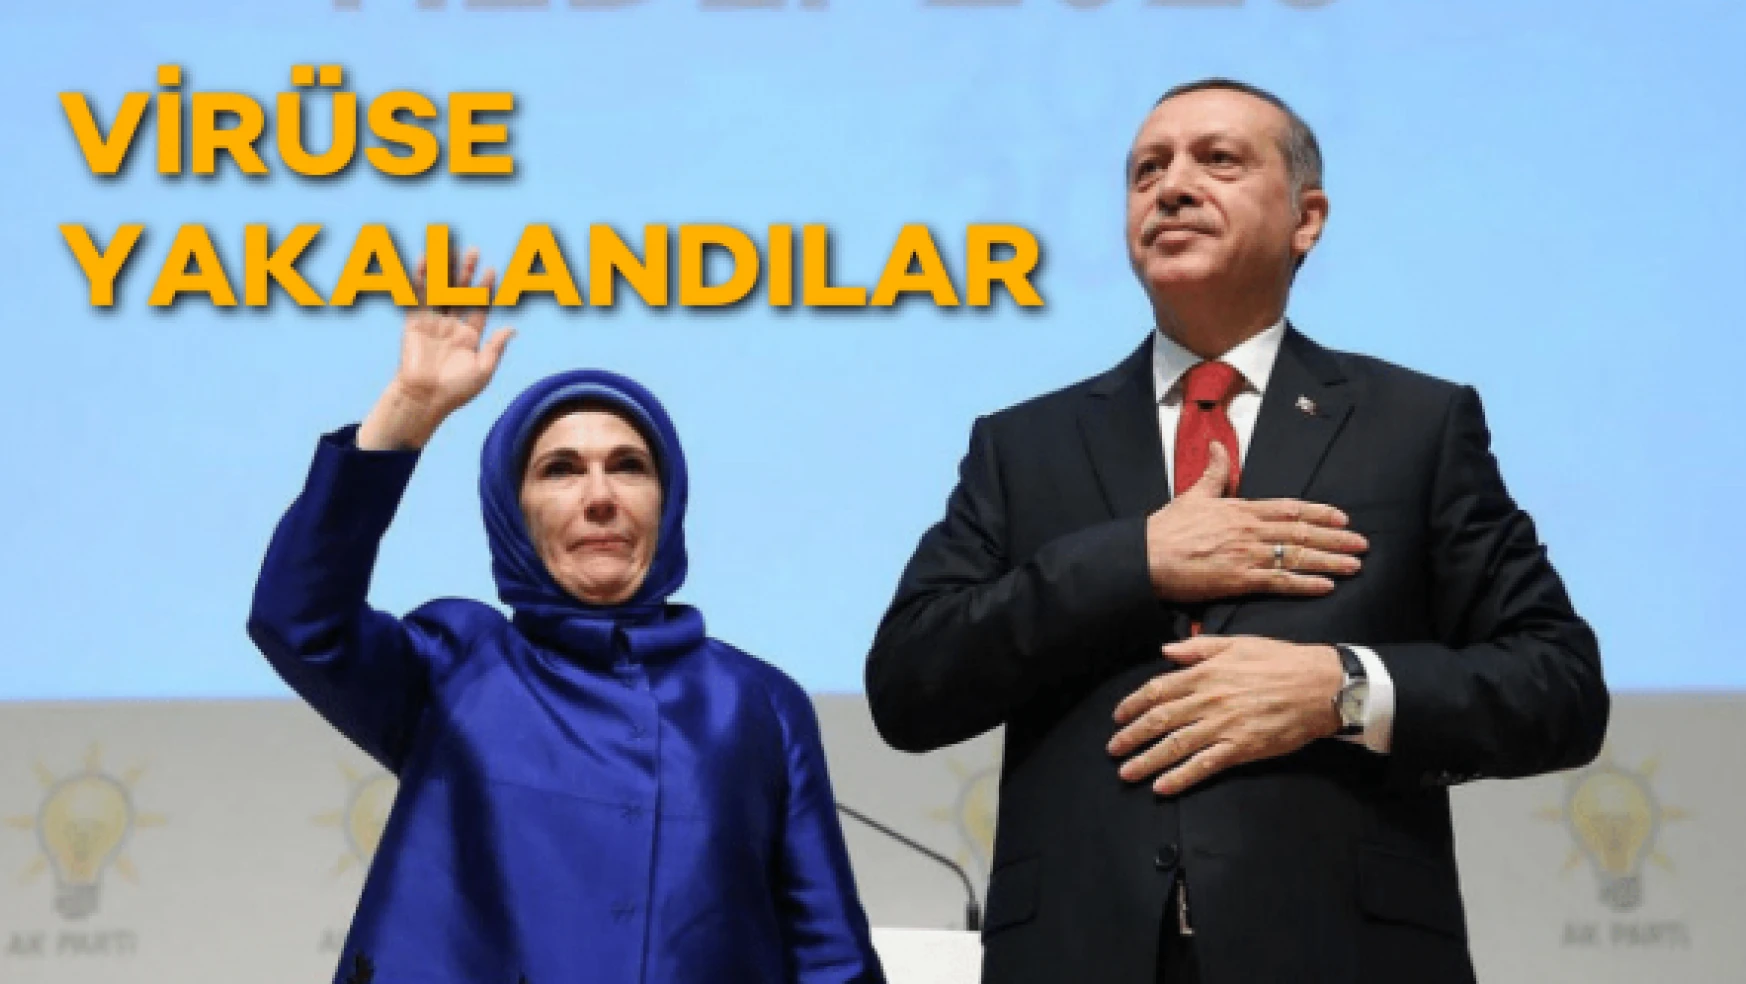 Cumhurbaşkanı Erdoğan koronavirüse yakalandı